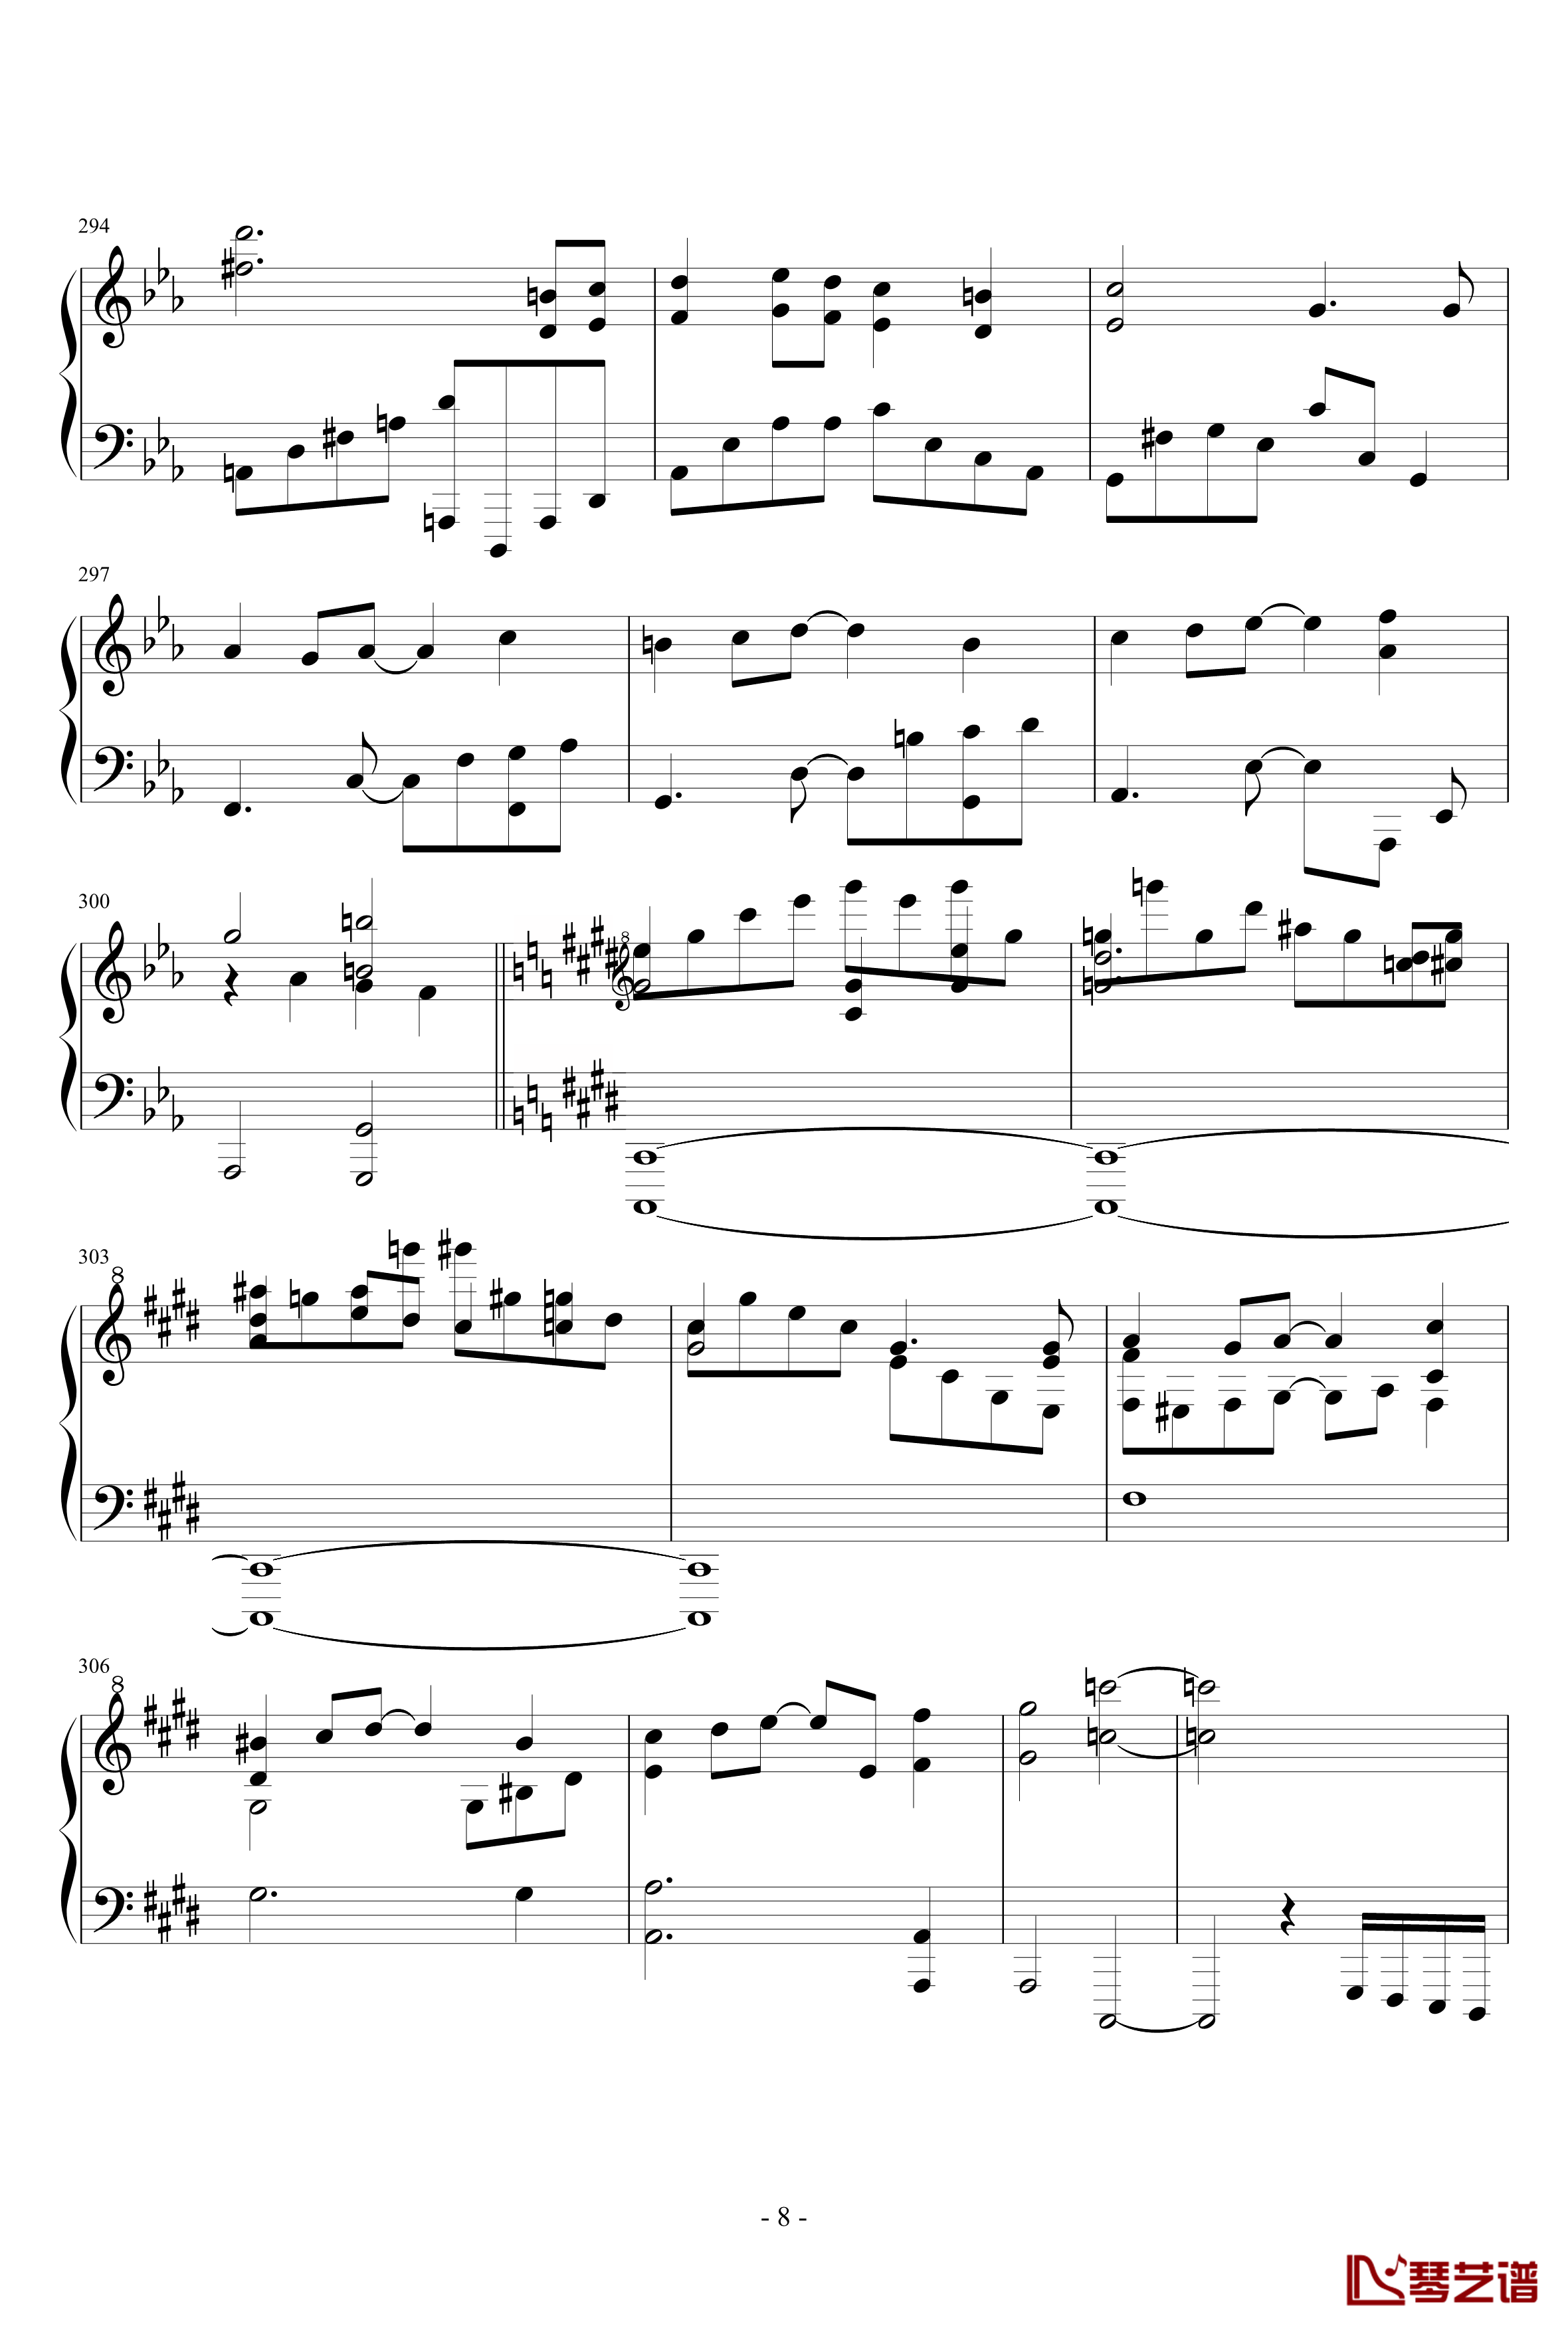 東方連奏曲II Pianoforte钢琴谱-第二部分-东方project8